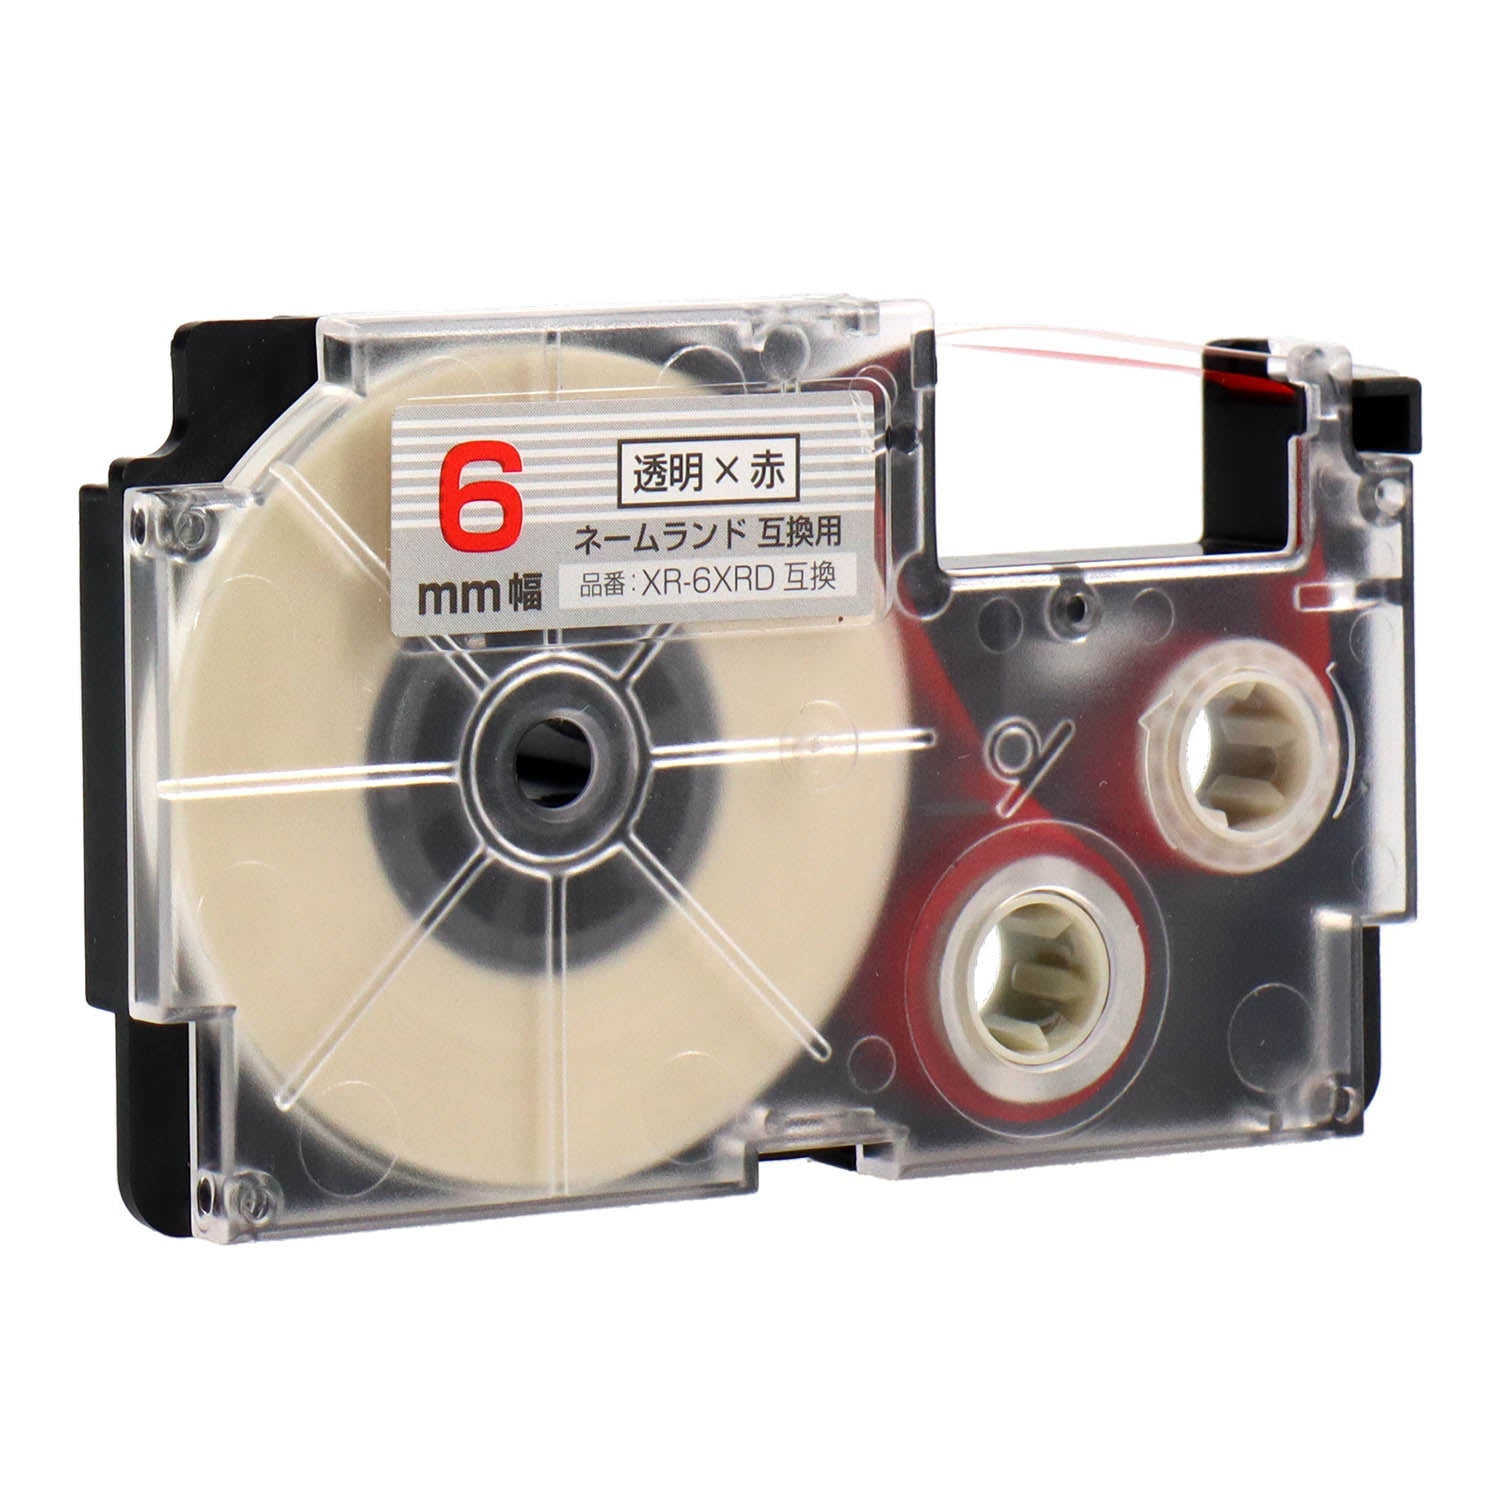 ネームランド用互換テープカートリッジ 透明×赤文字 6mm